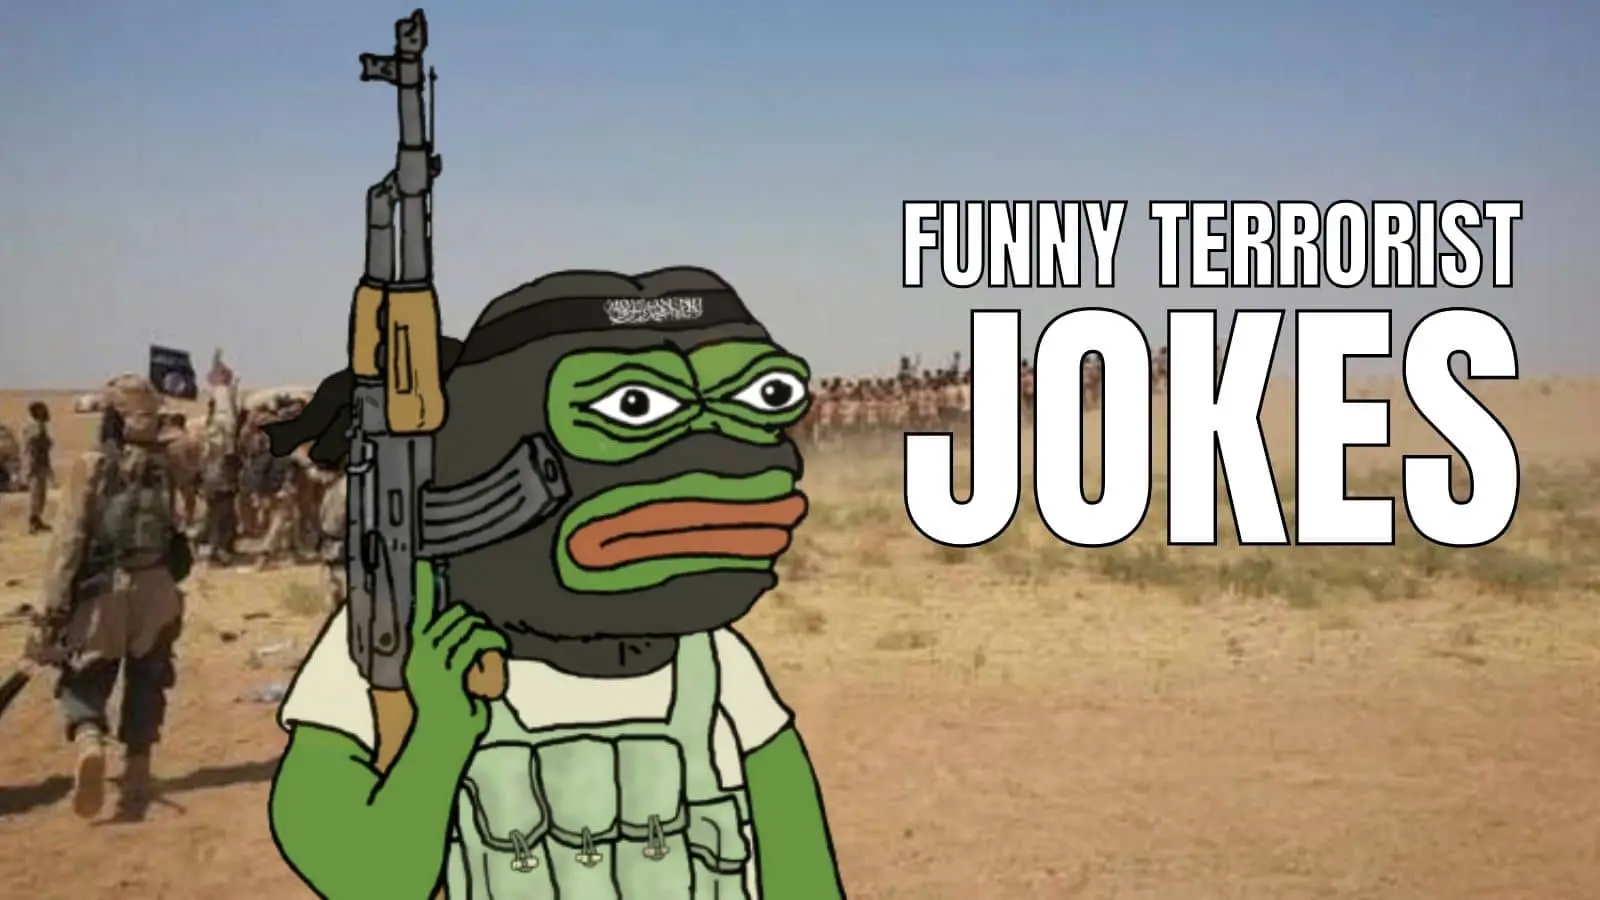 Funny Terrorist Jokes on Radicals